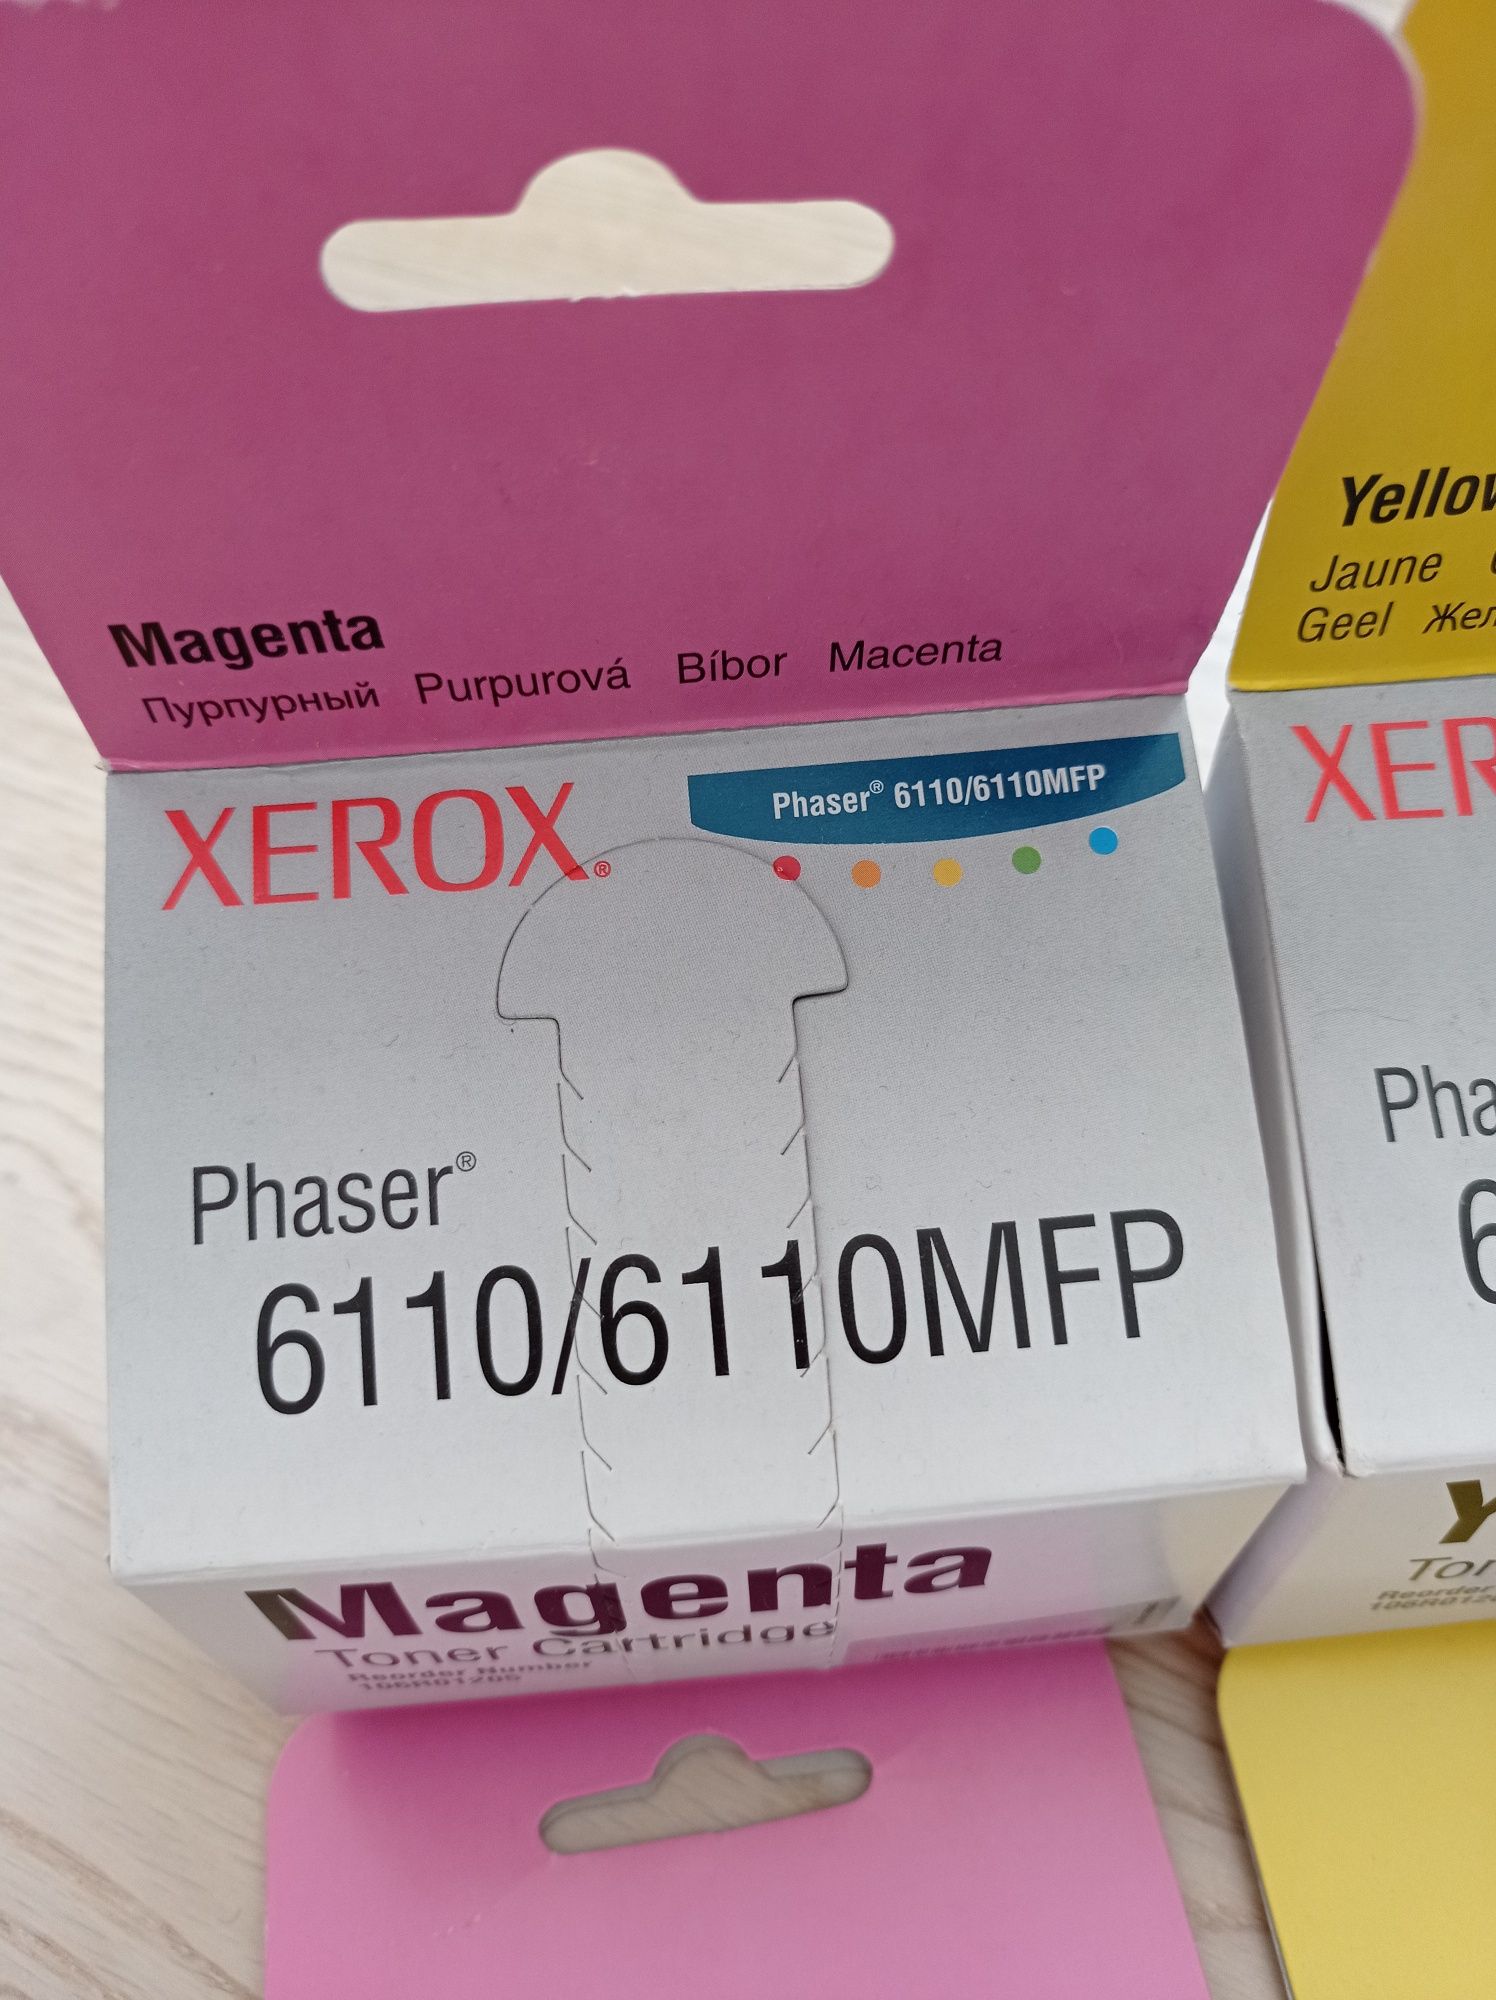 Картридж xerox Phaser 6110/6110MFP пурпурный и жёлтый. Оригинал